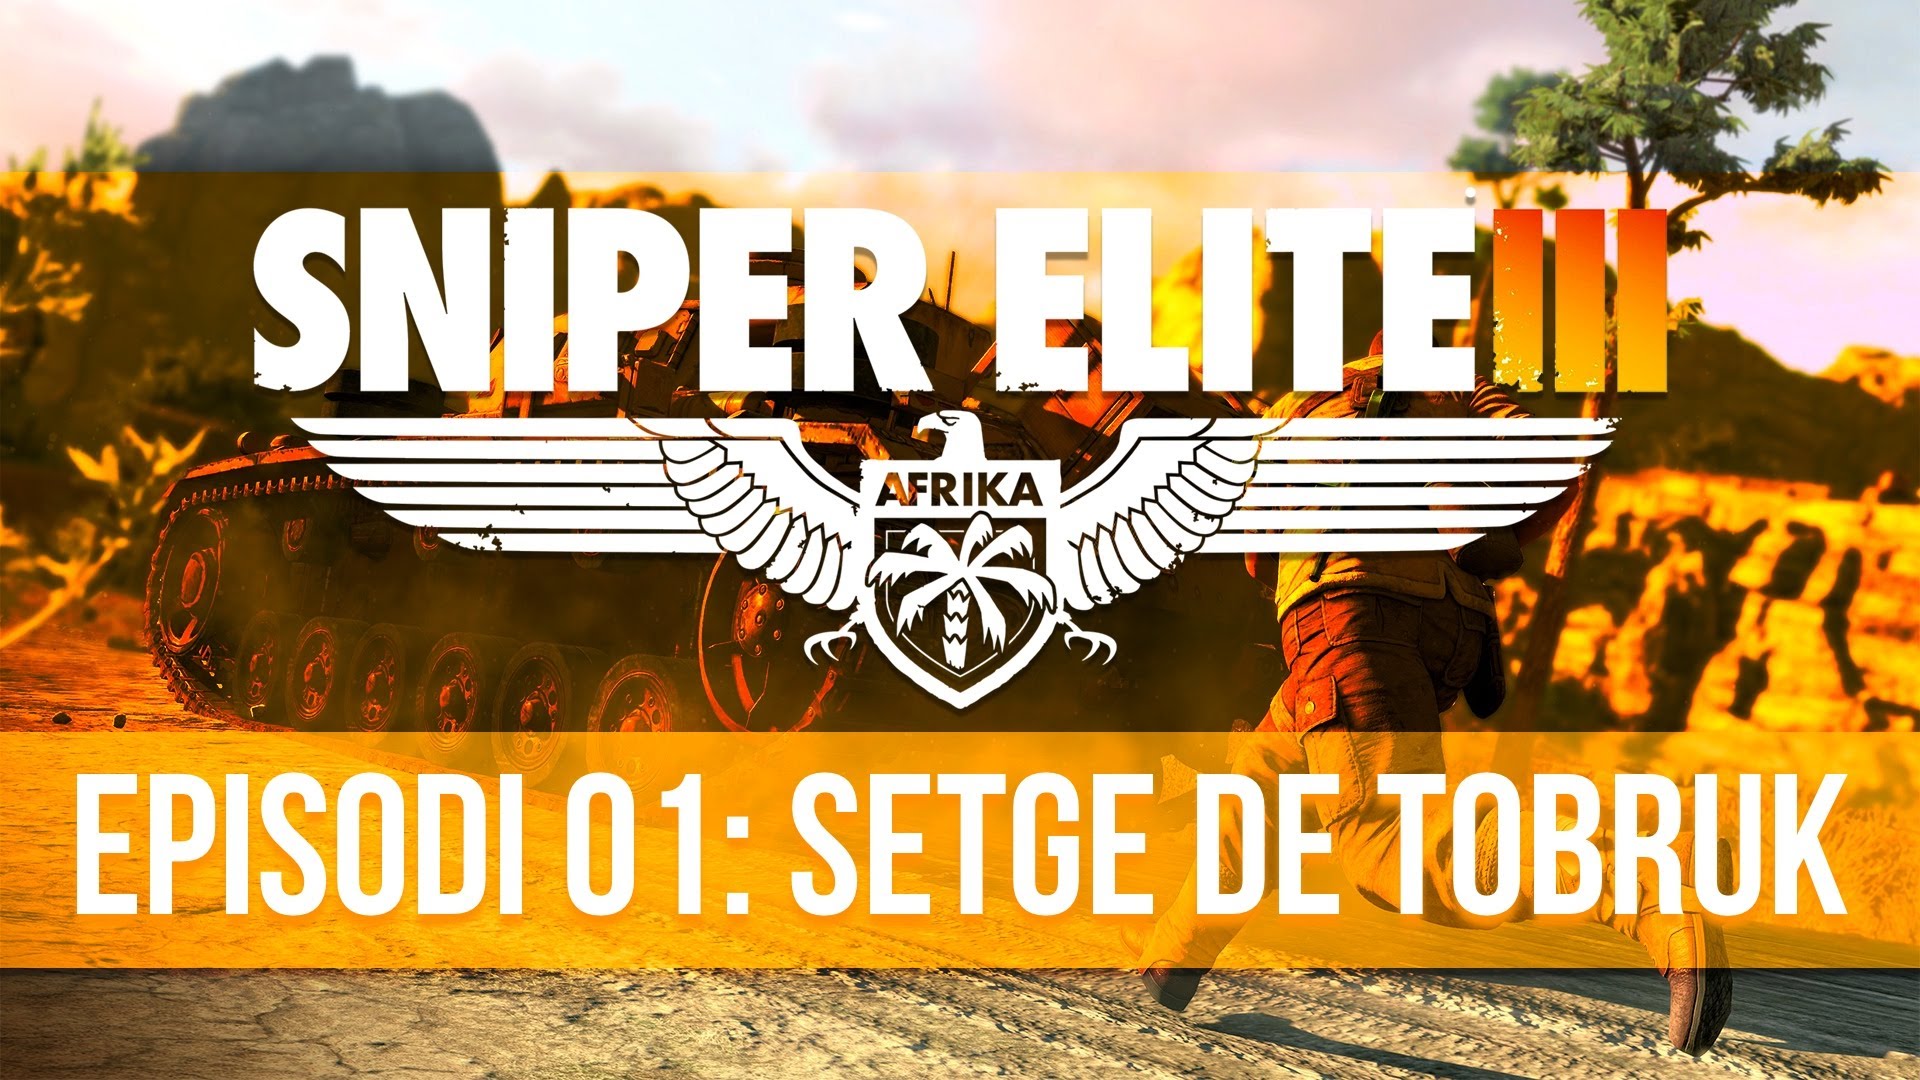 Sniper Elite III - Episodi 1: Setge de Tobruk de Project1407